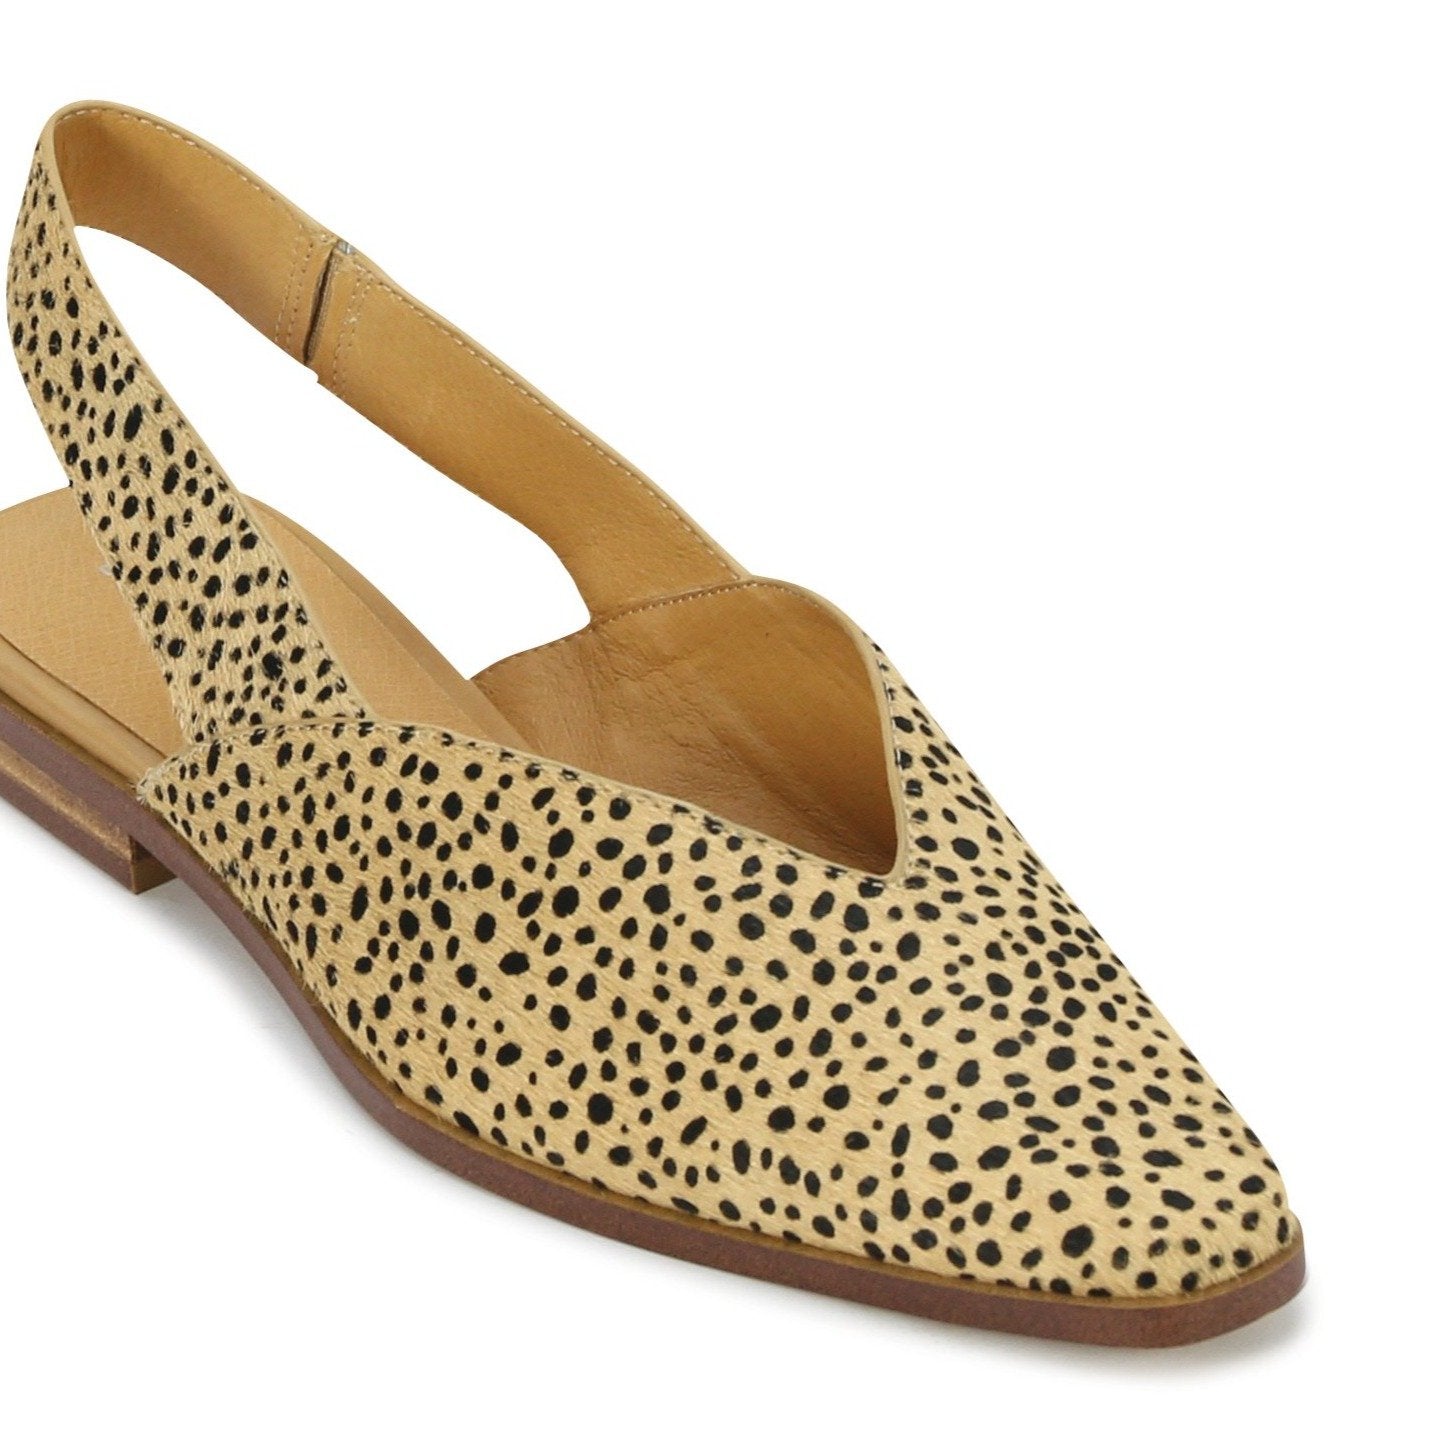 VIAN - EOS Footwear - Sling Back #color_cheetah